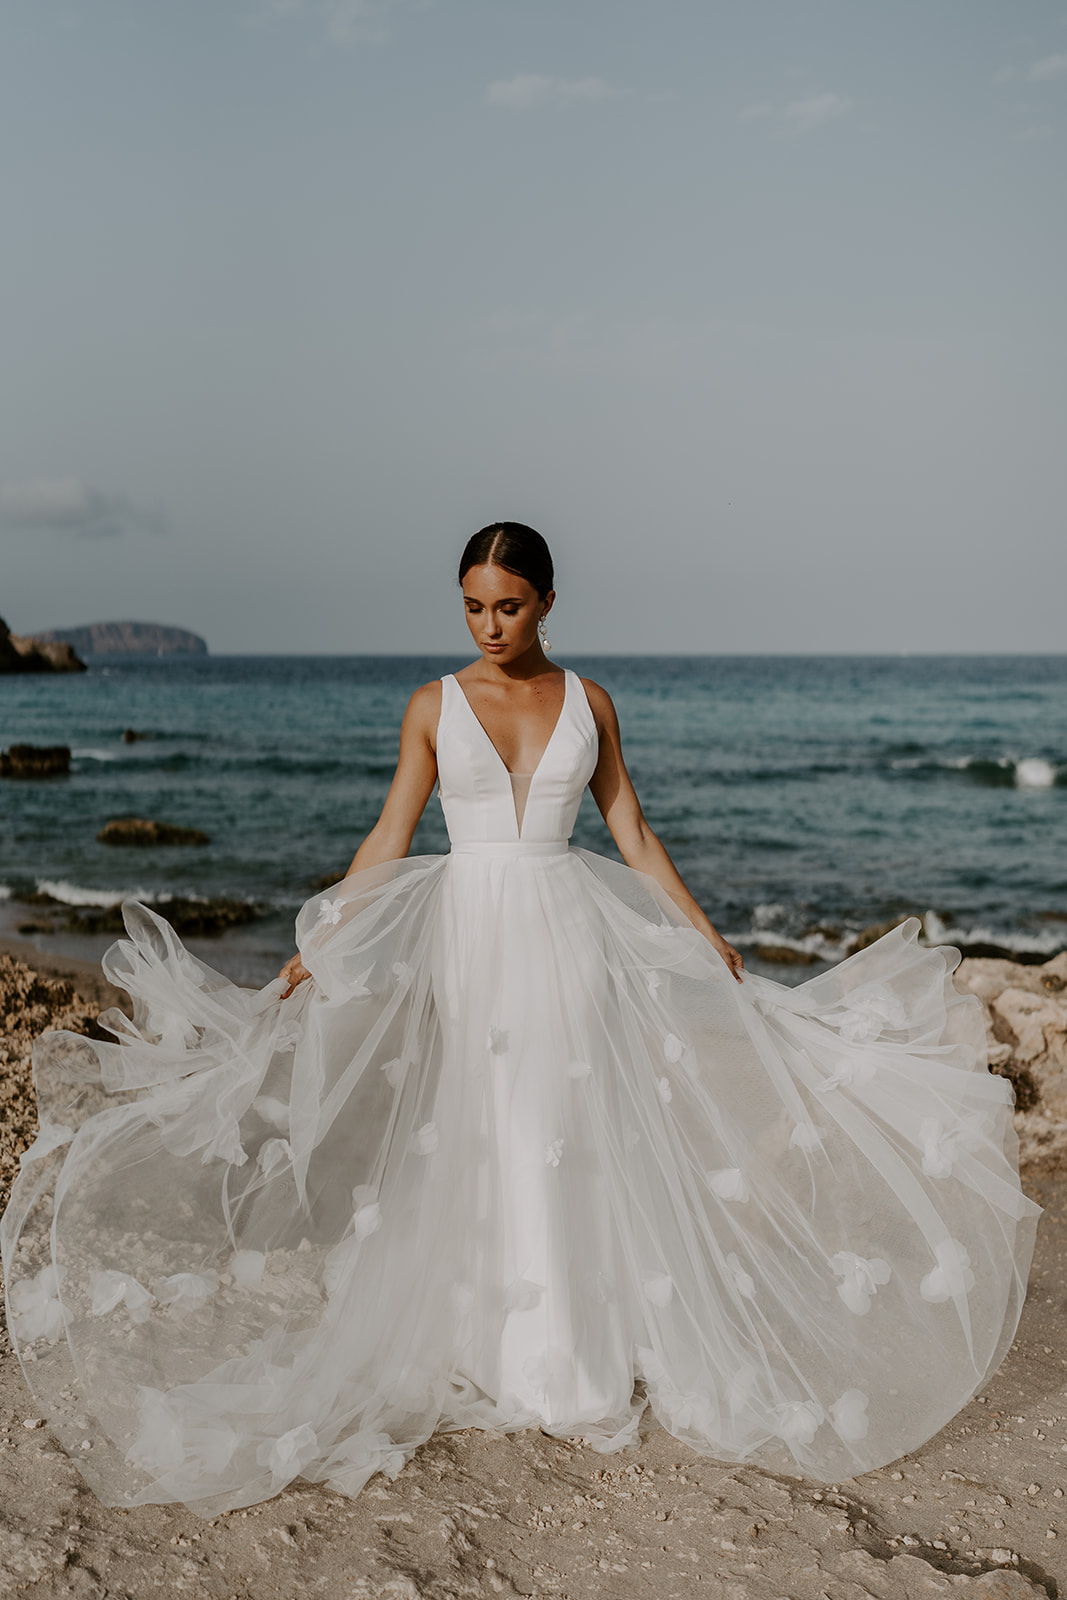 LUZ WITH LUZ SKIRT STORY BRIDE12 "Dein Traum-Brautkleid für den schönsten Tag im Leben"